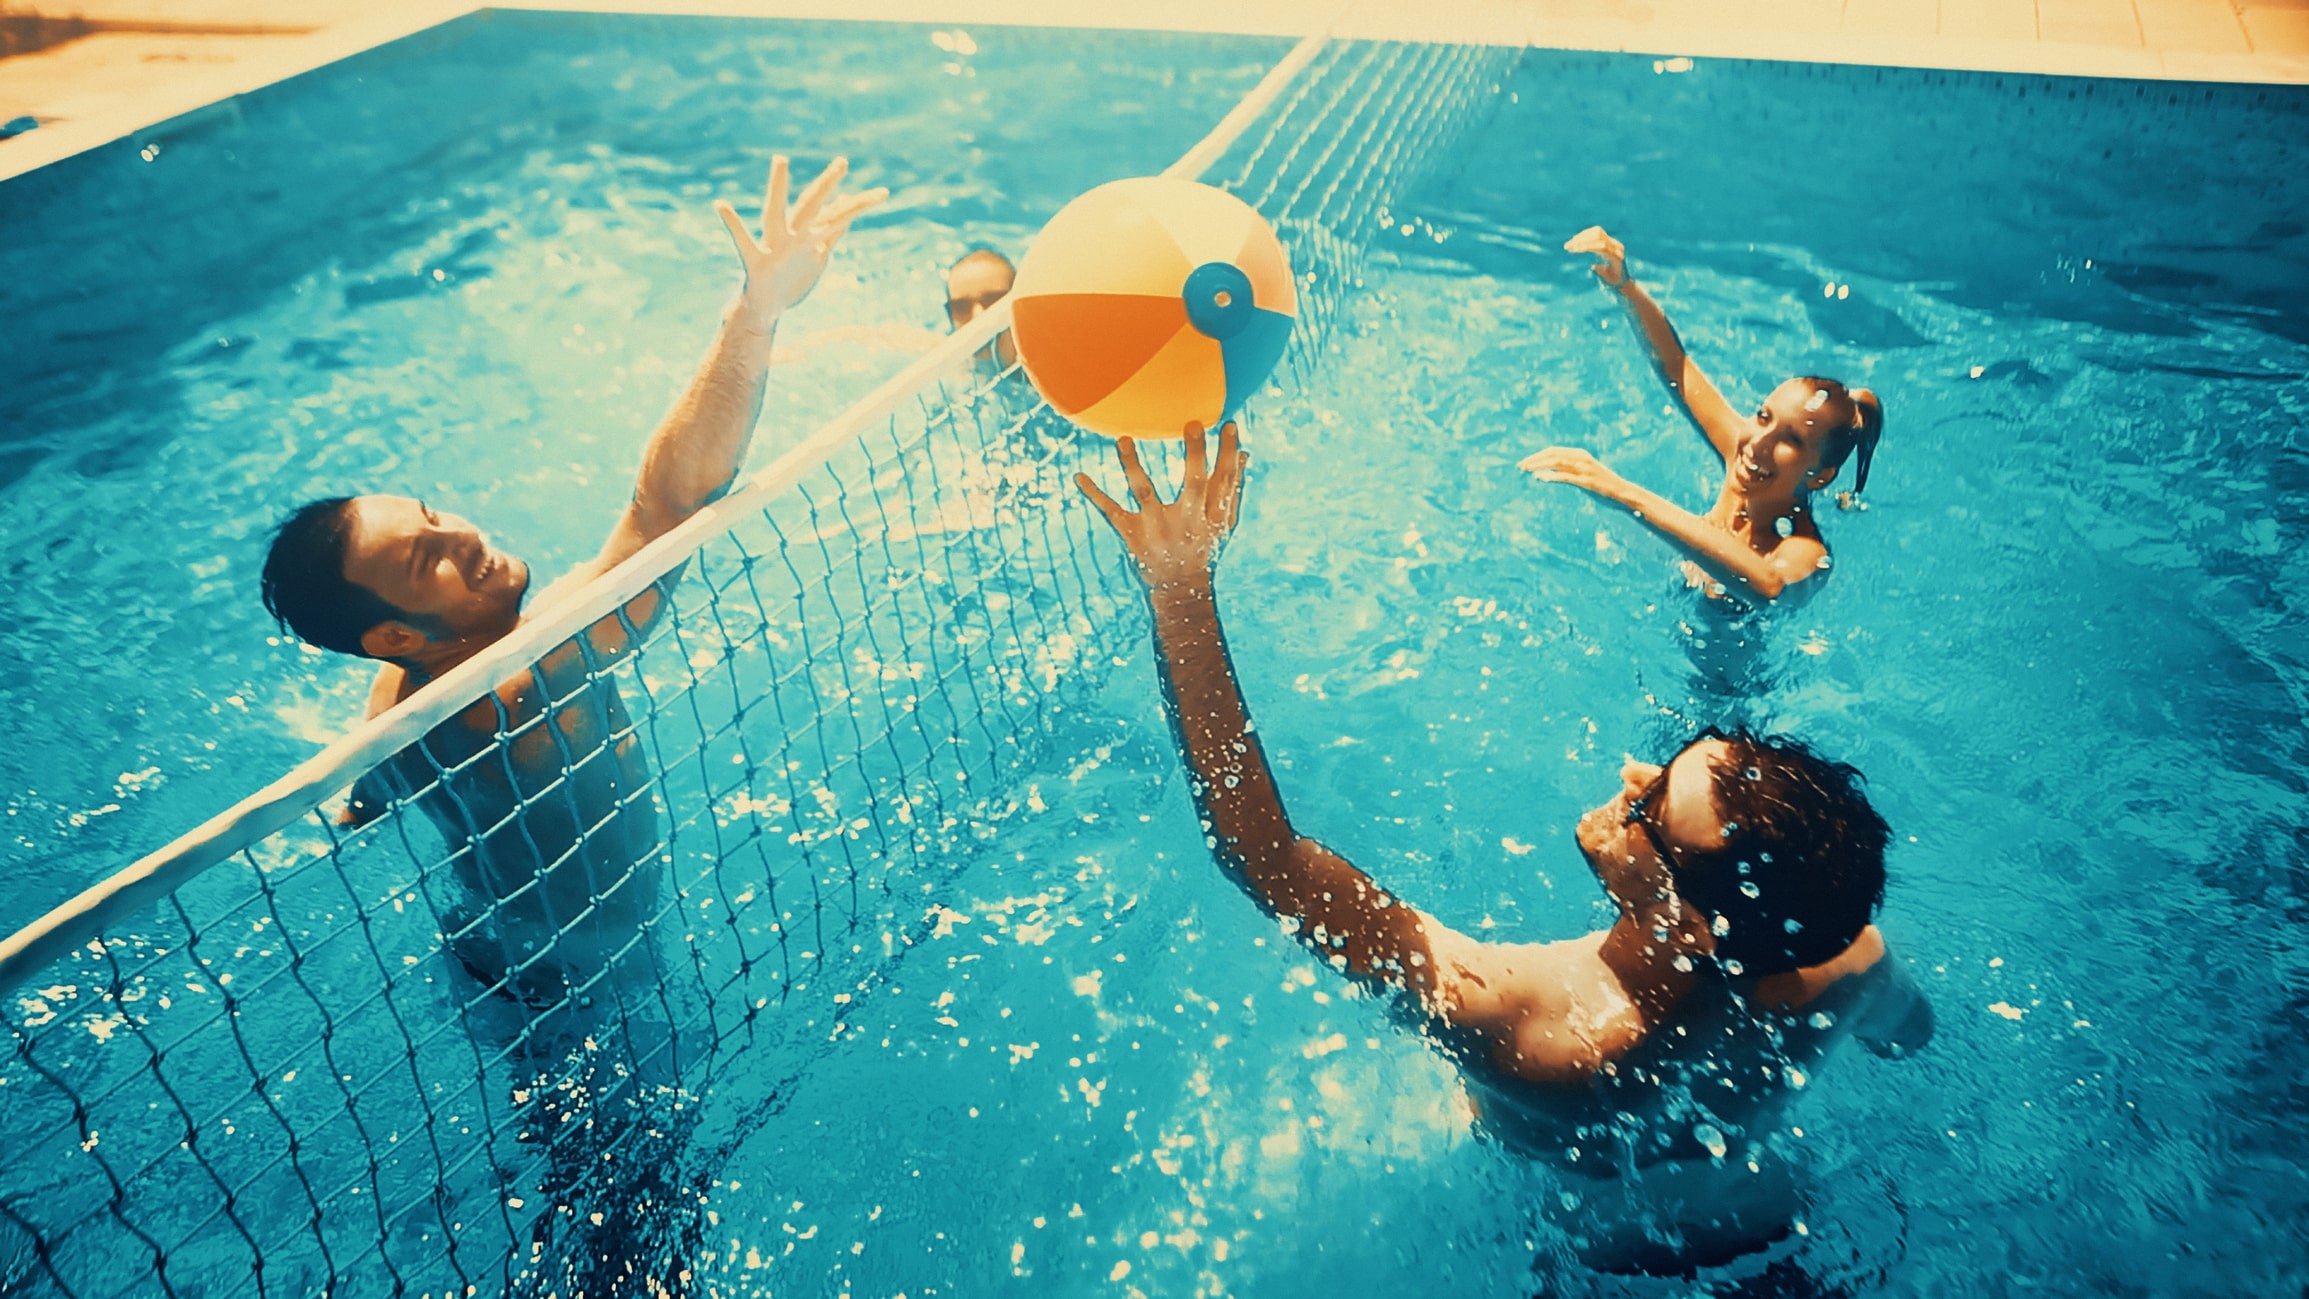 Игра с мячом в бассейне 9. Аква волейбол. Волейбол на воде. Волейбол в бассейне. Водный волейбол в бассейне.